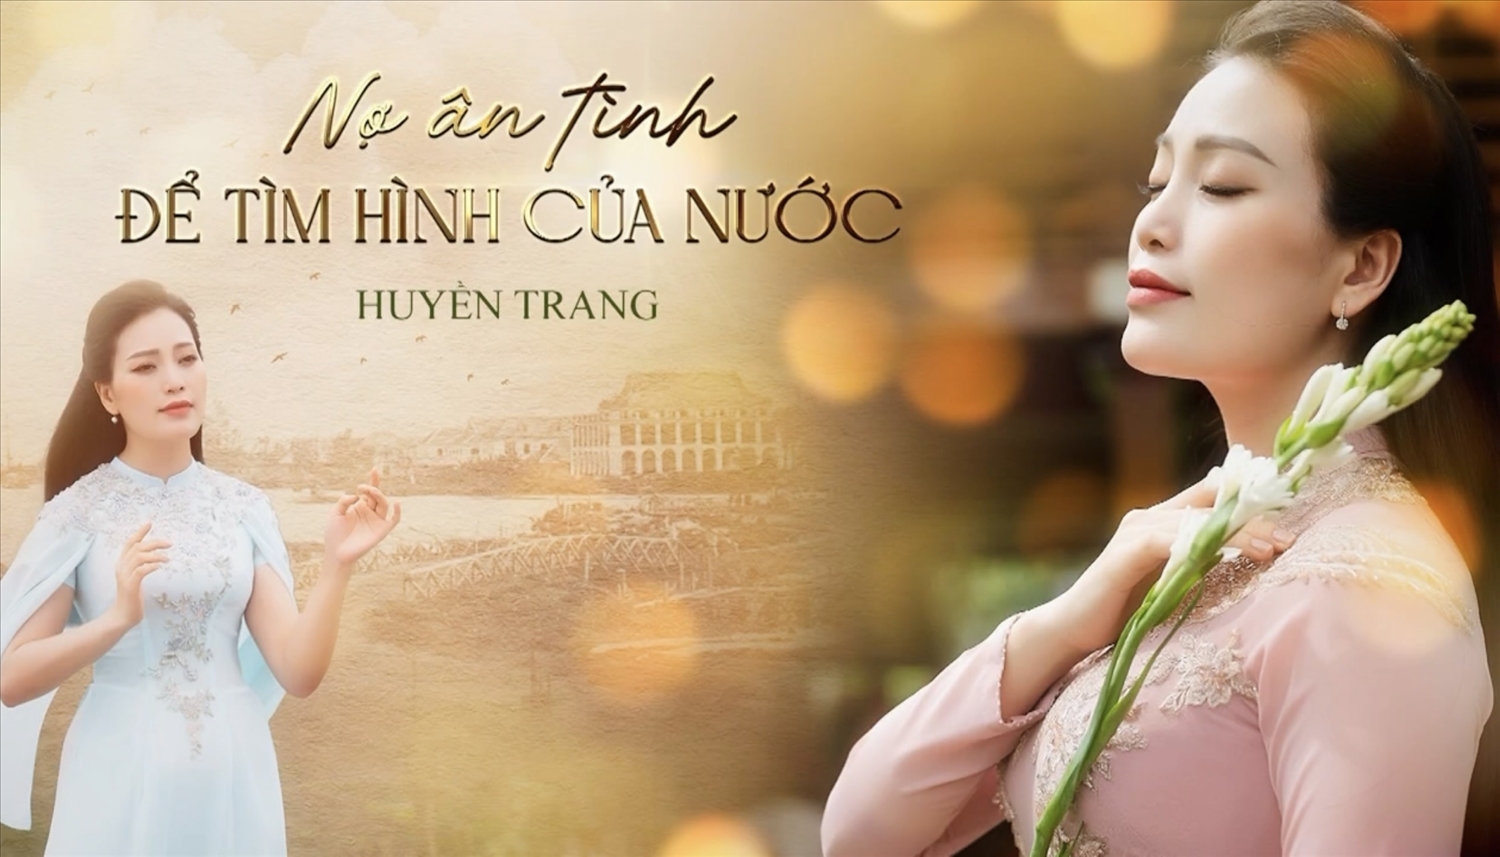 Bìa MV "Nợ ân tình để tìm hình của nước" của ca sĩ Huyền Trang.